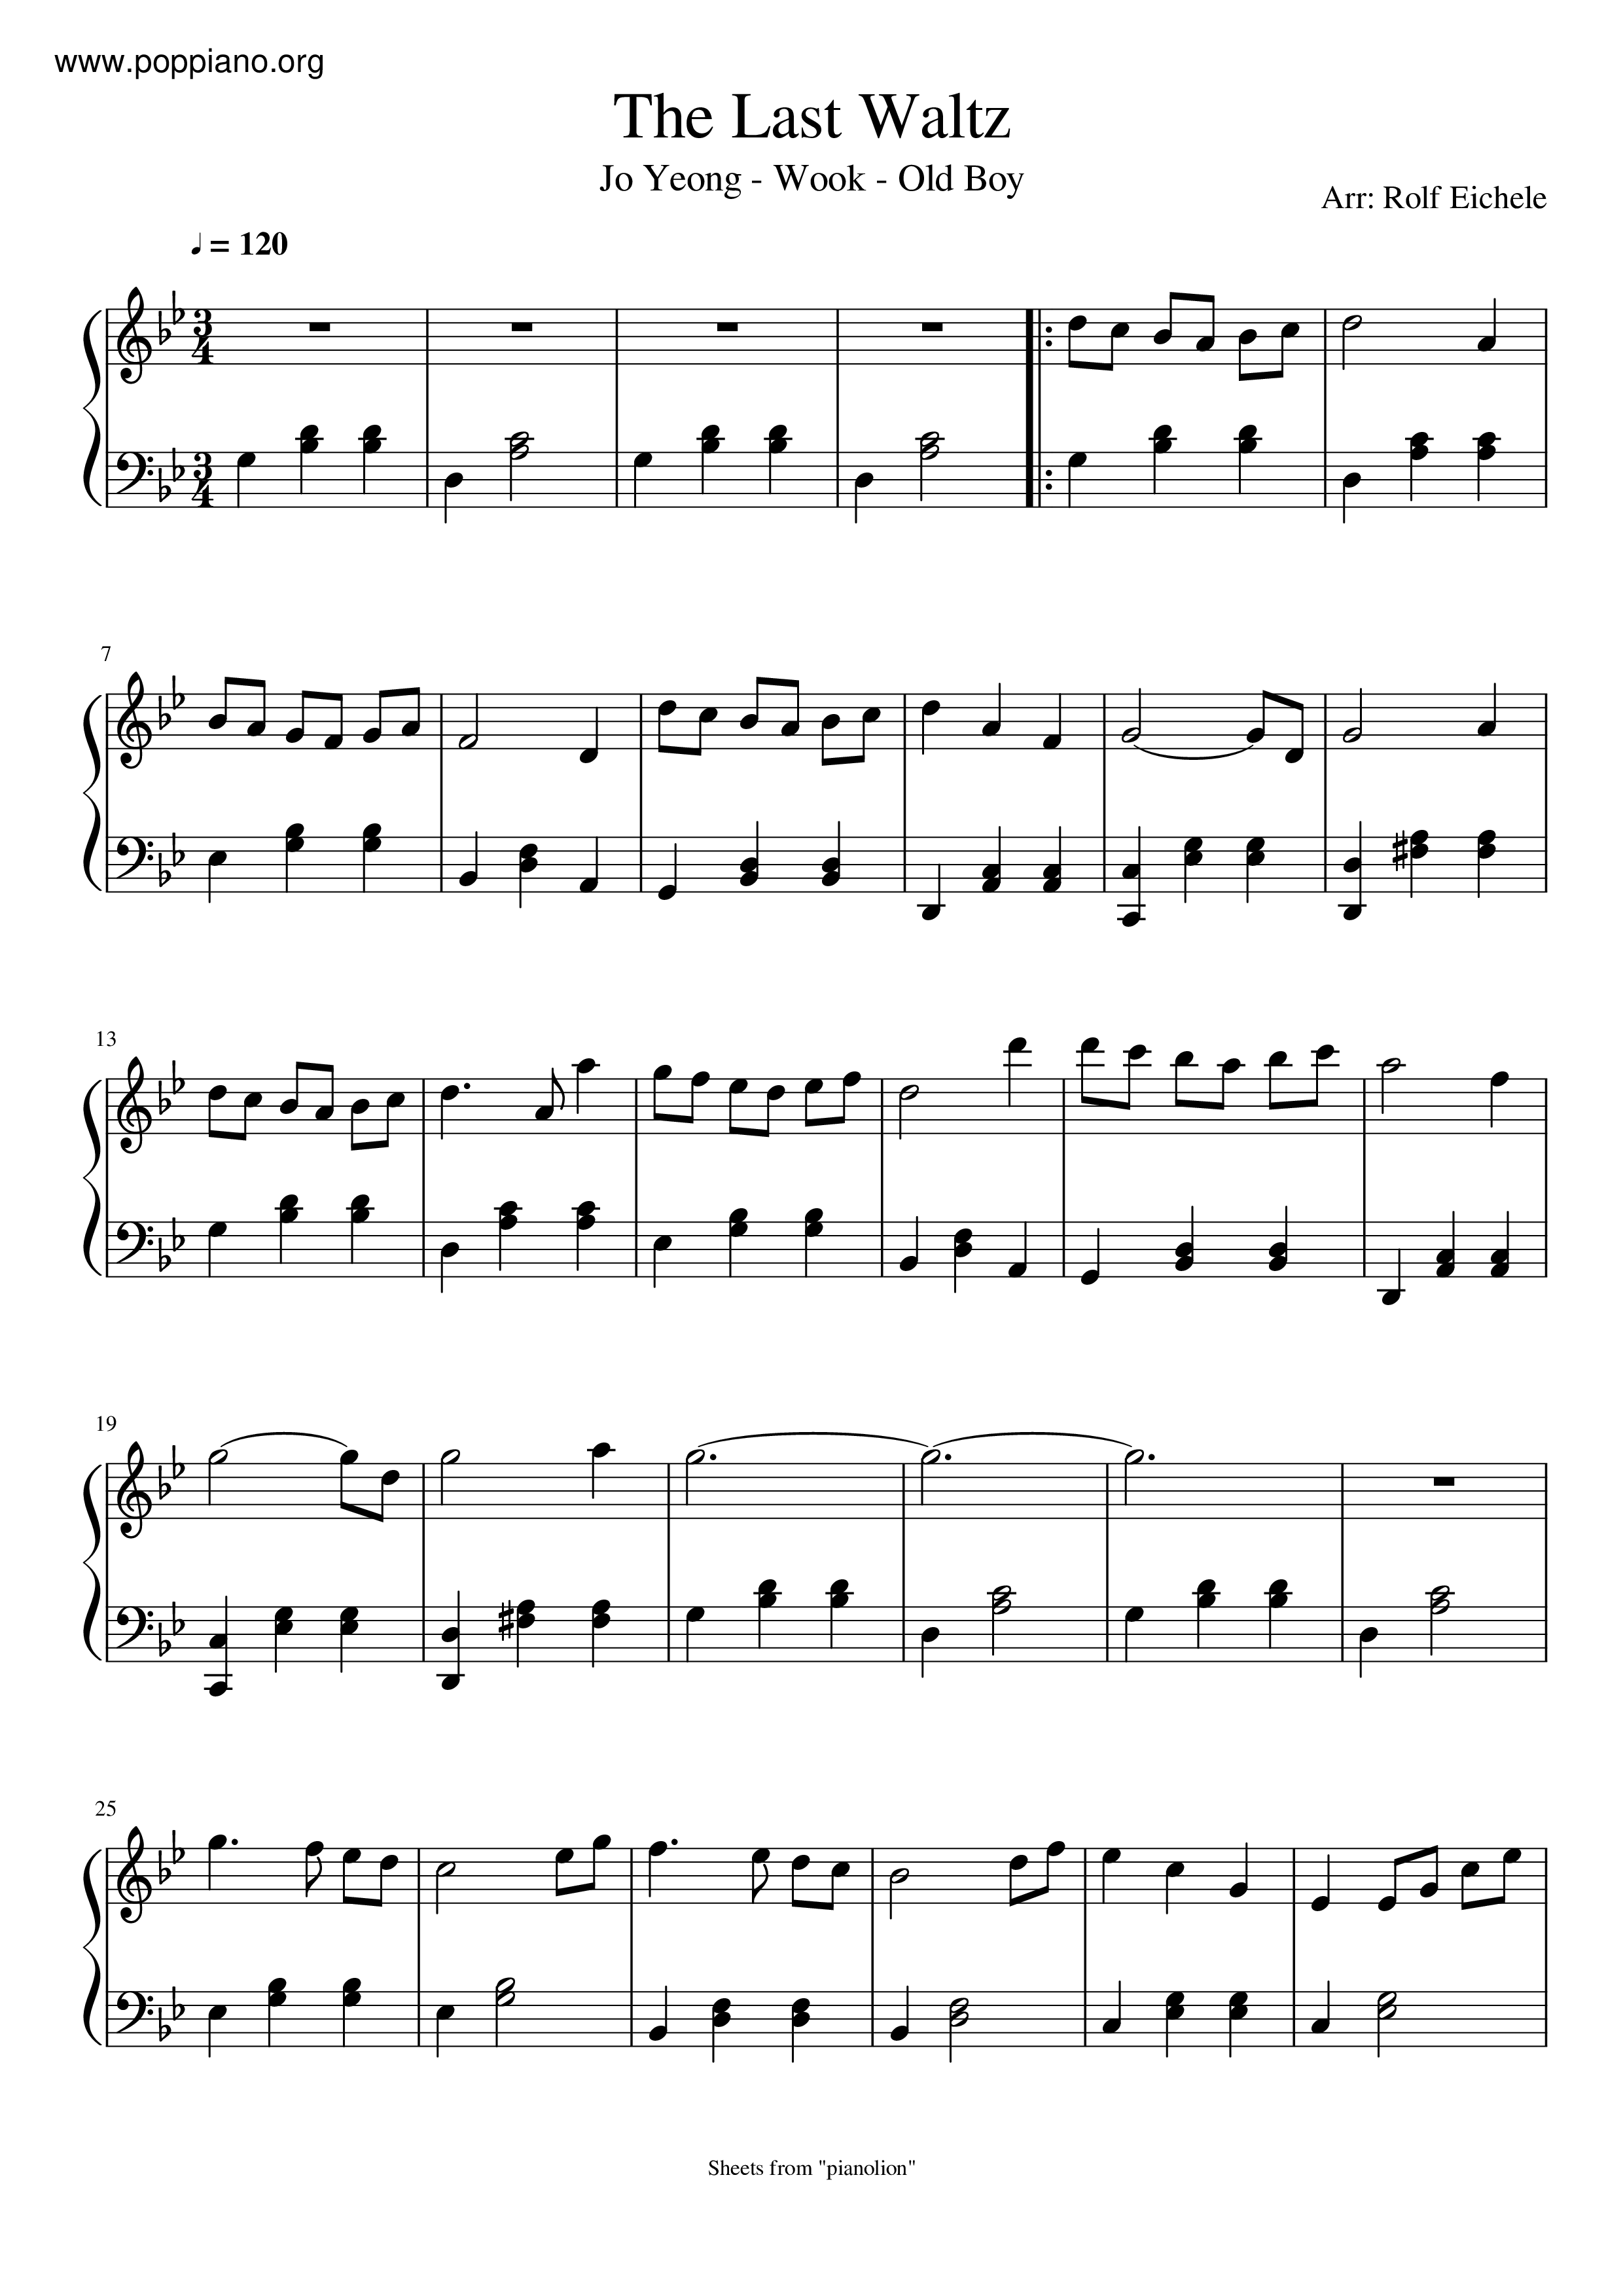 The Last Waltz Score